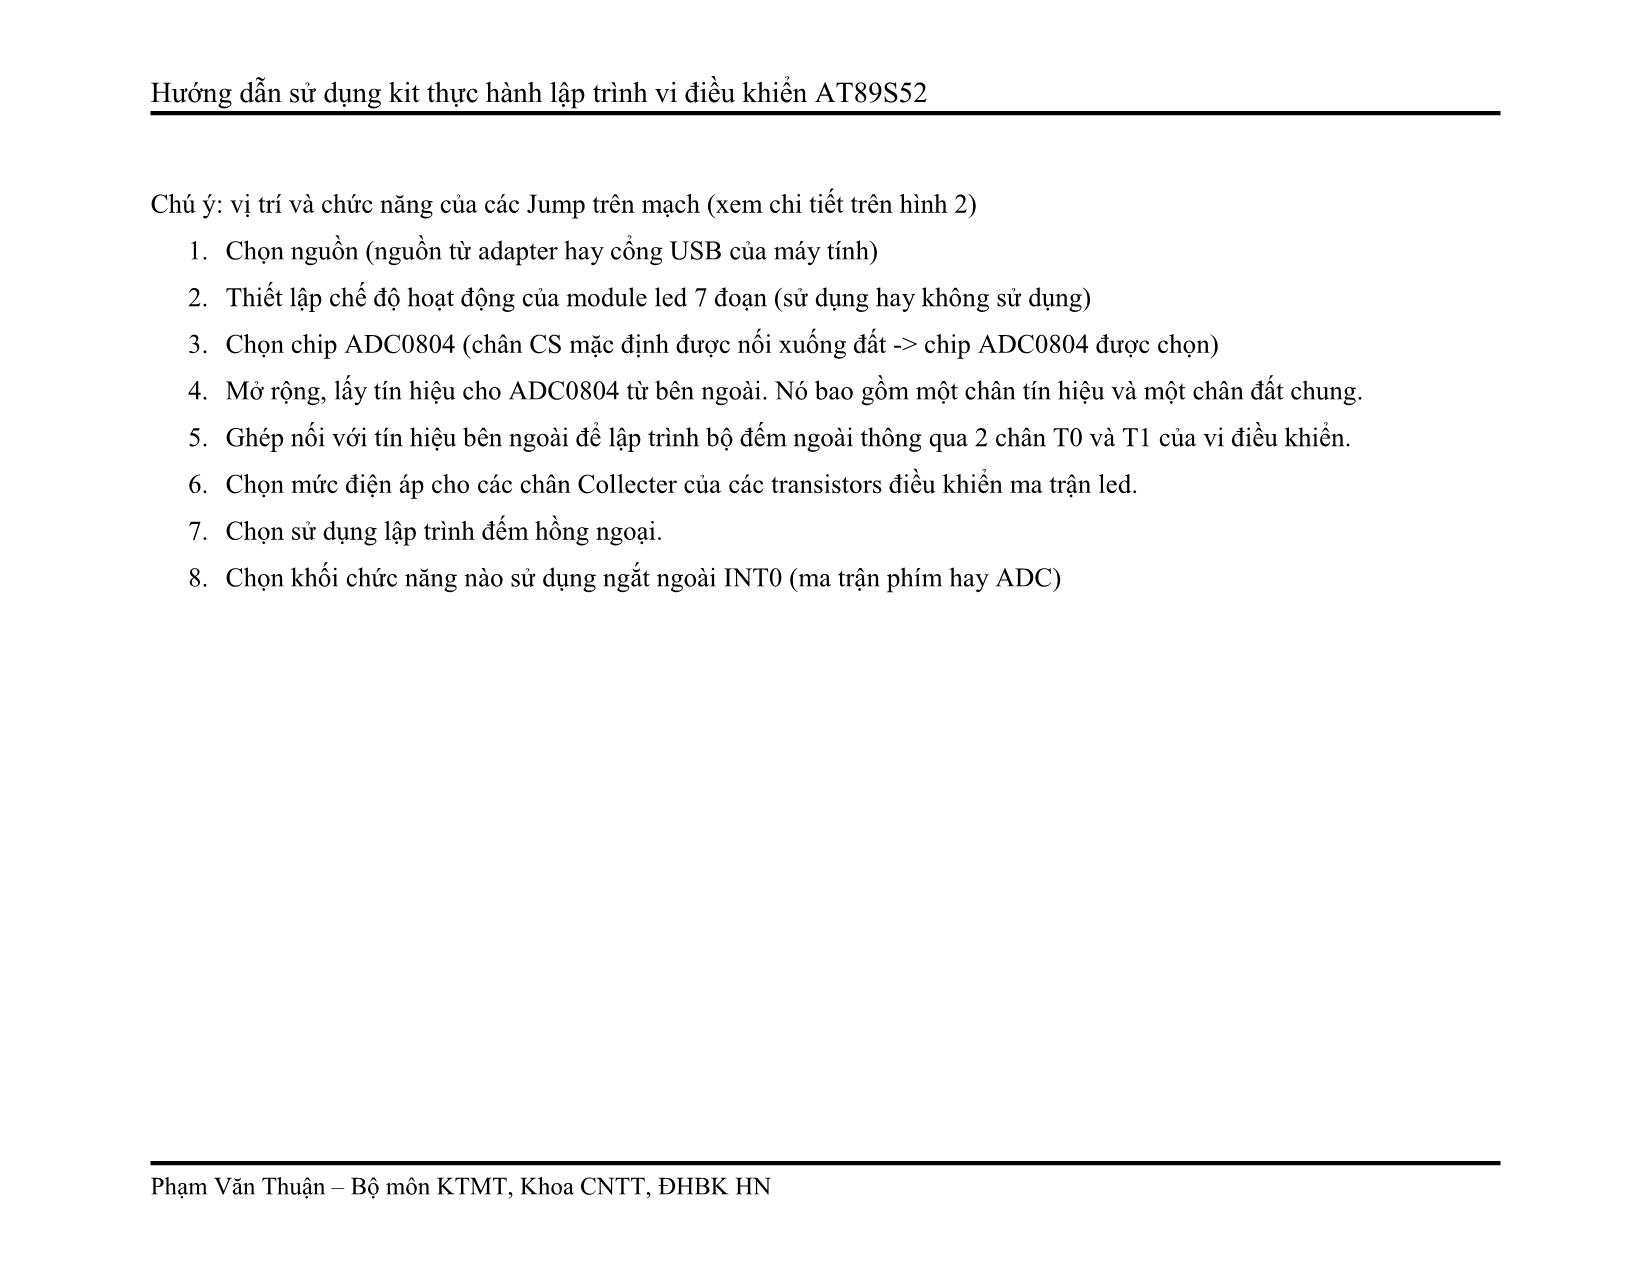 Hướng dẫn sử dụng kit thực hành lập trình vi điều khiển AT89S52 trang 3